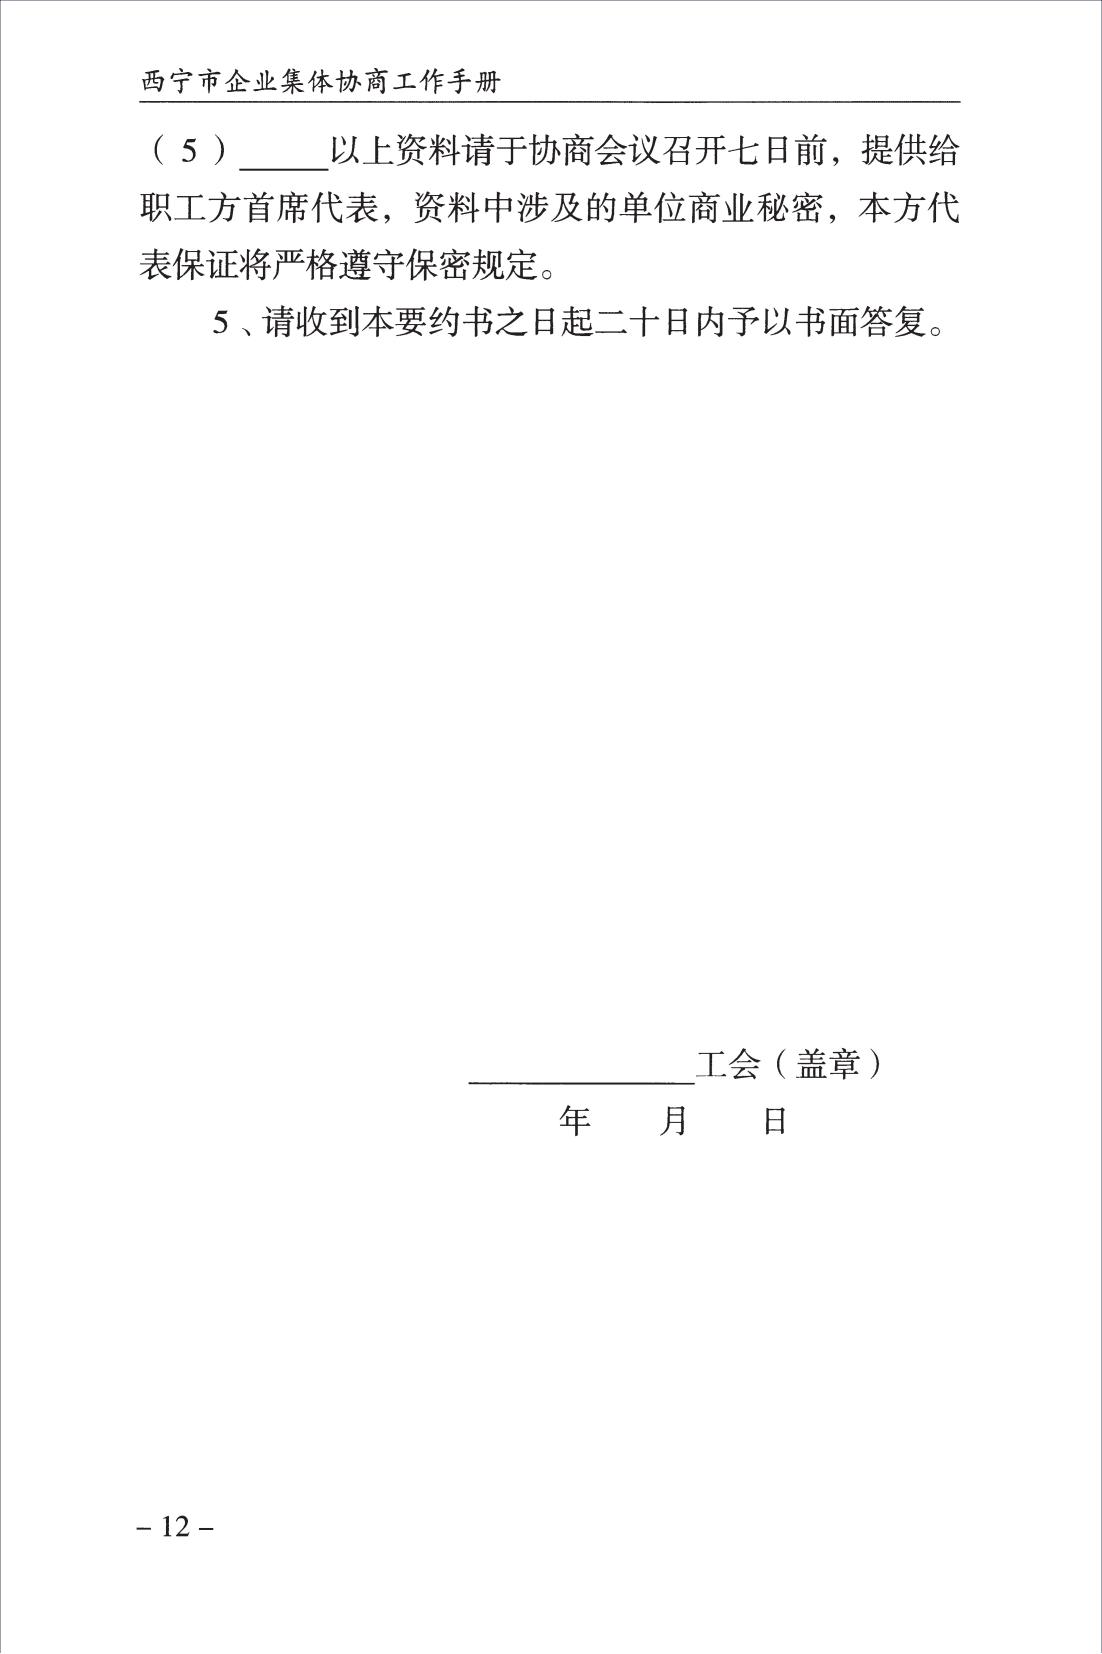 西宁市企业集体协商工作手册_14.jpg